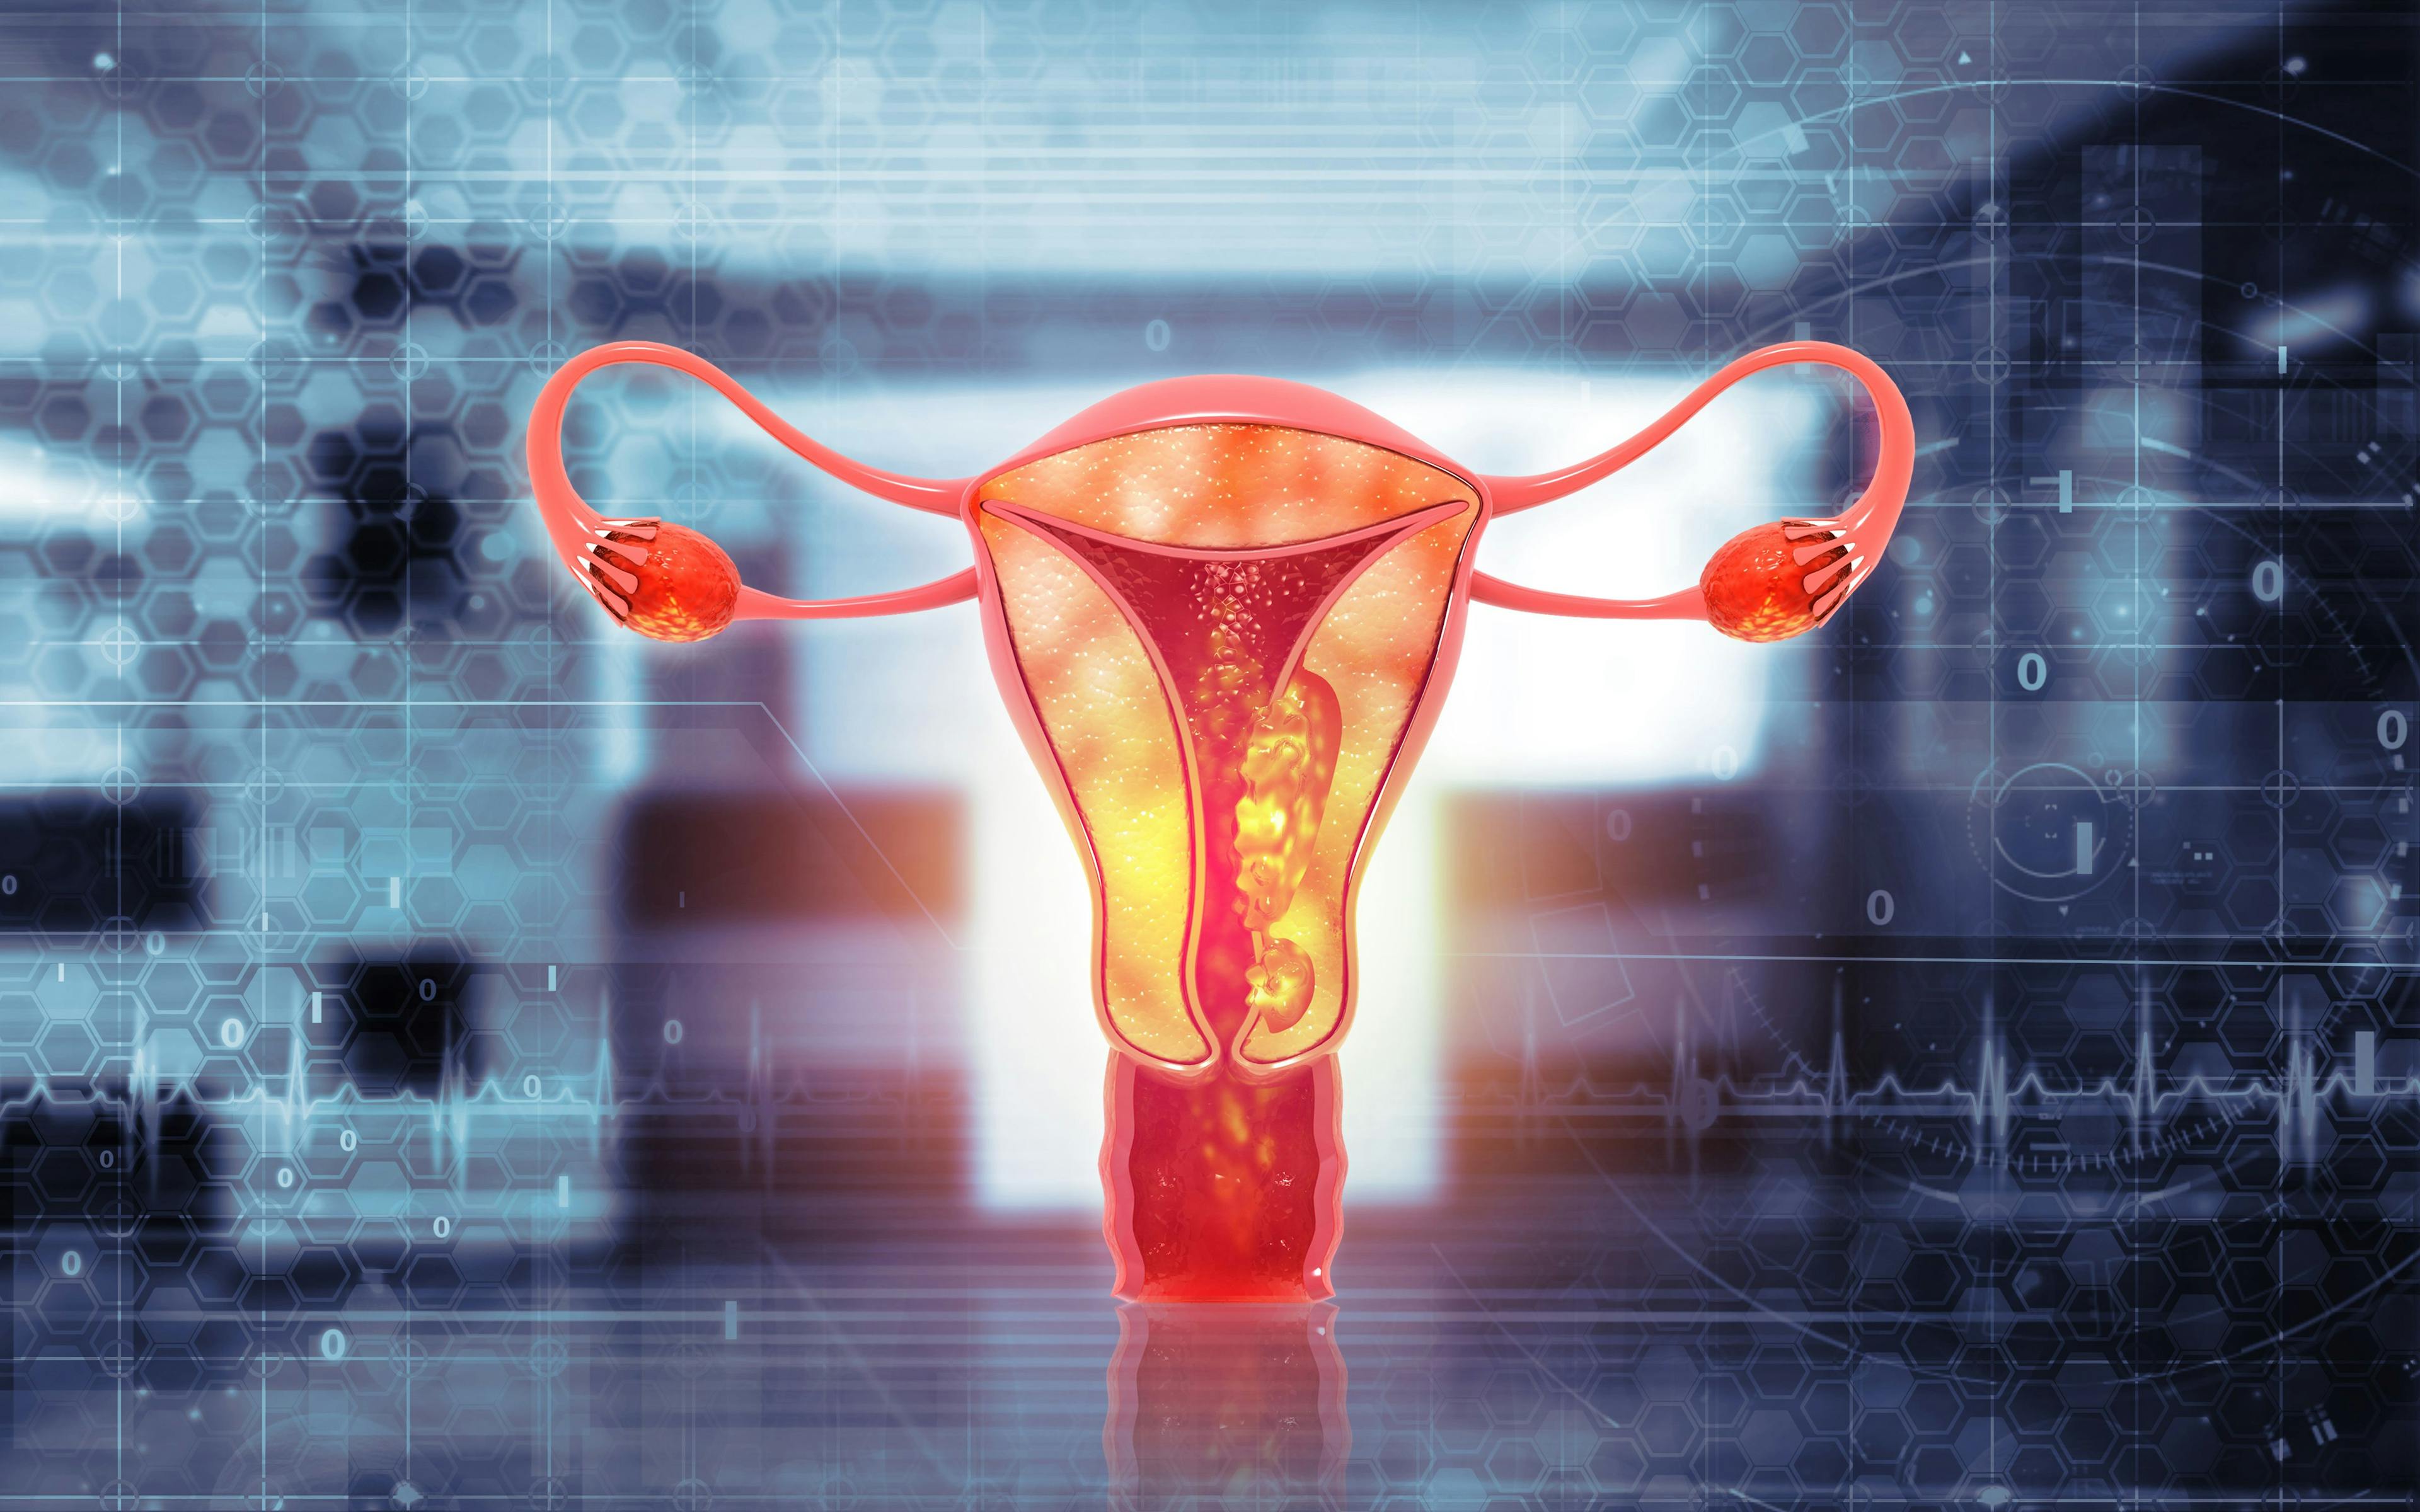 Selinexor maintenance improves PFS in endometrial cancer